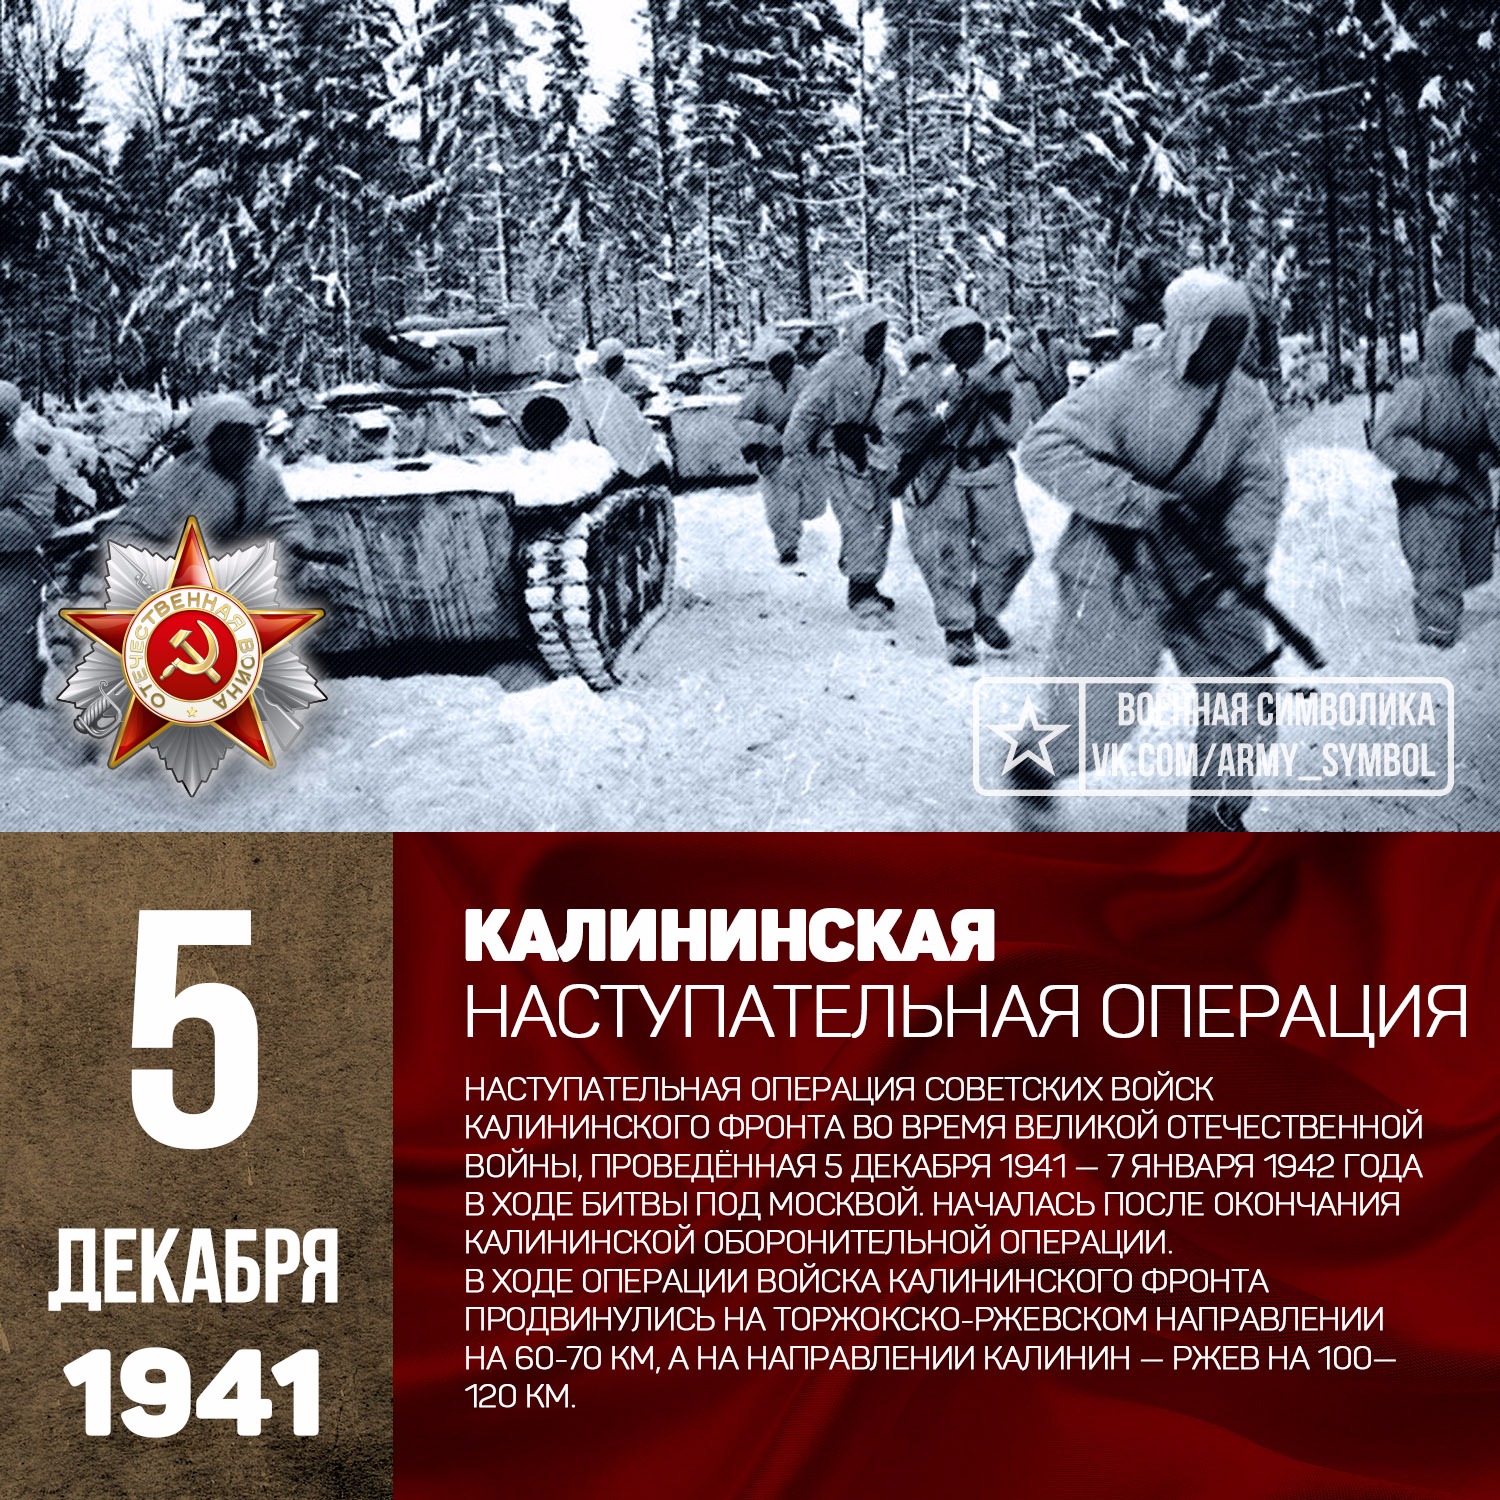 31 декабря 1941. Калининская наступательная операция 1941. Калининская наступательная операция 5.12.1941 7.01.1942. Контрнаступление под Москвой 5-6 декабря 1941. Контрнаступление Советской армии под Москвой. 5 Декабря 1941-7 января 1942.